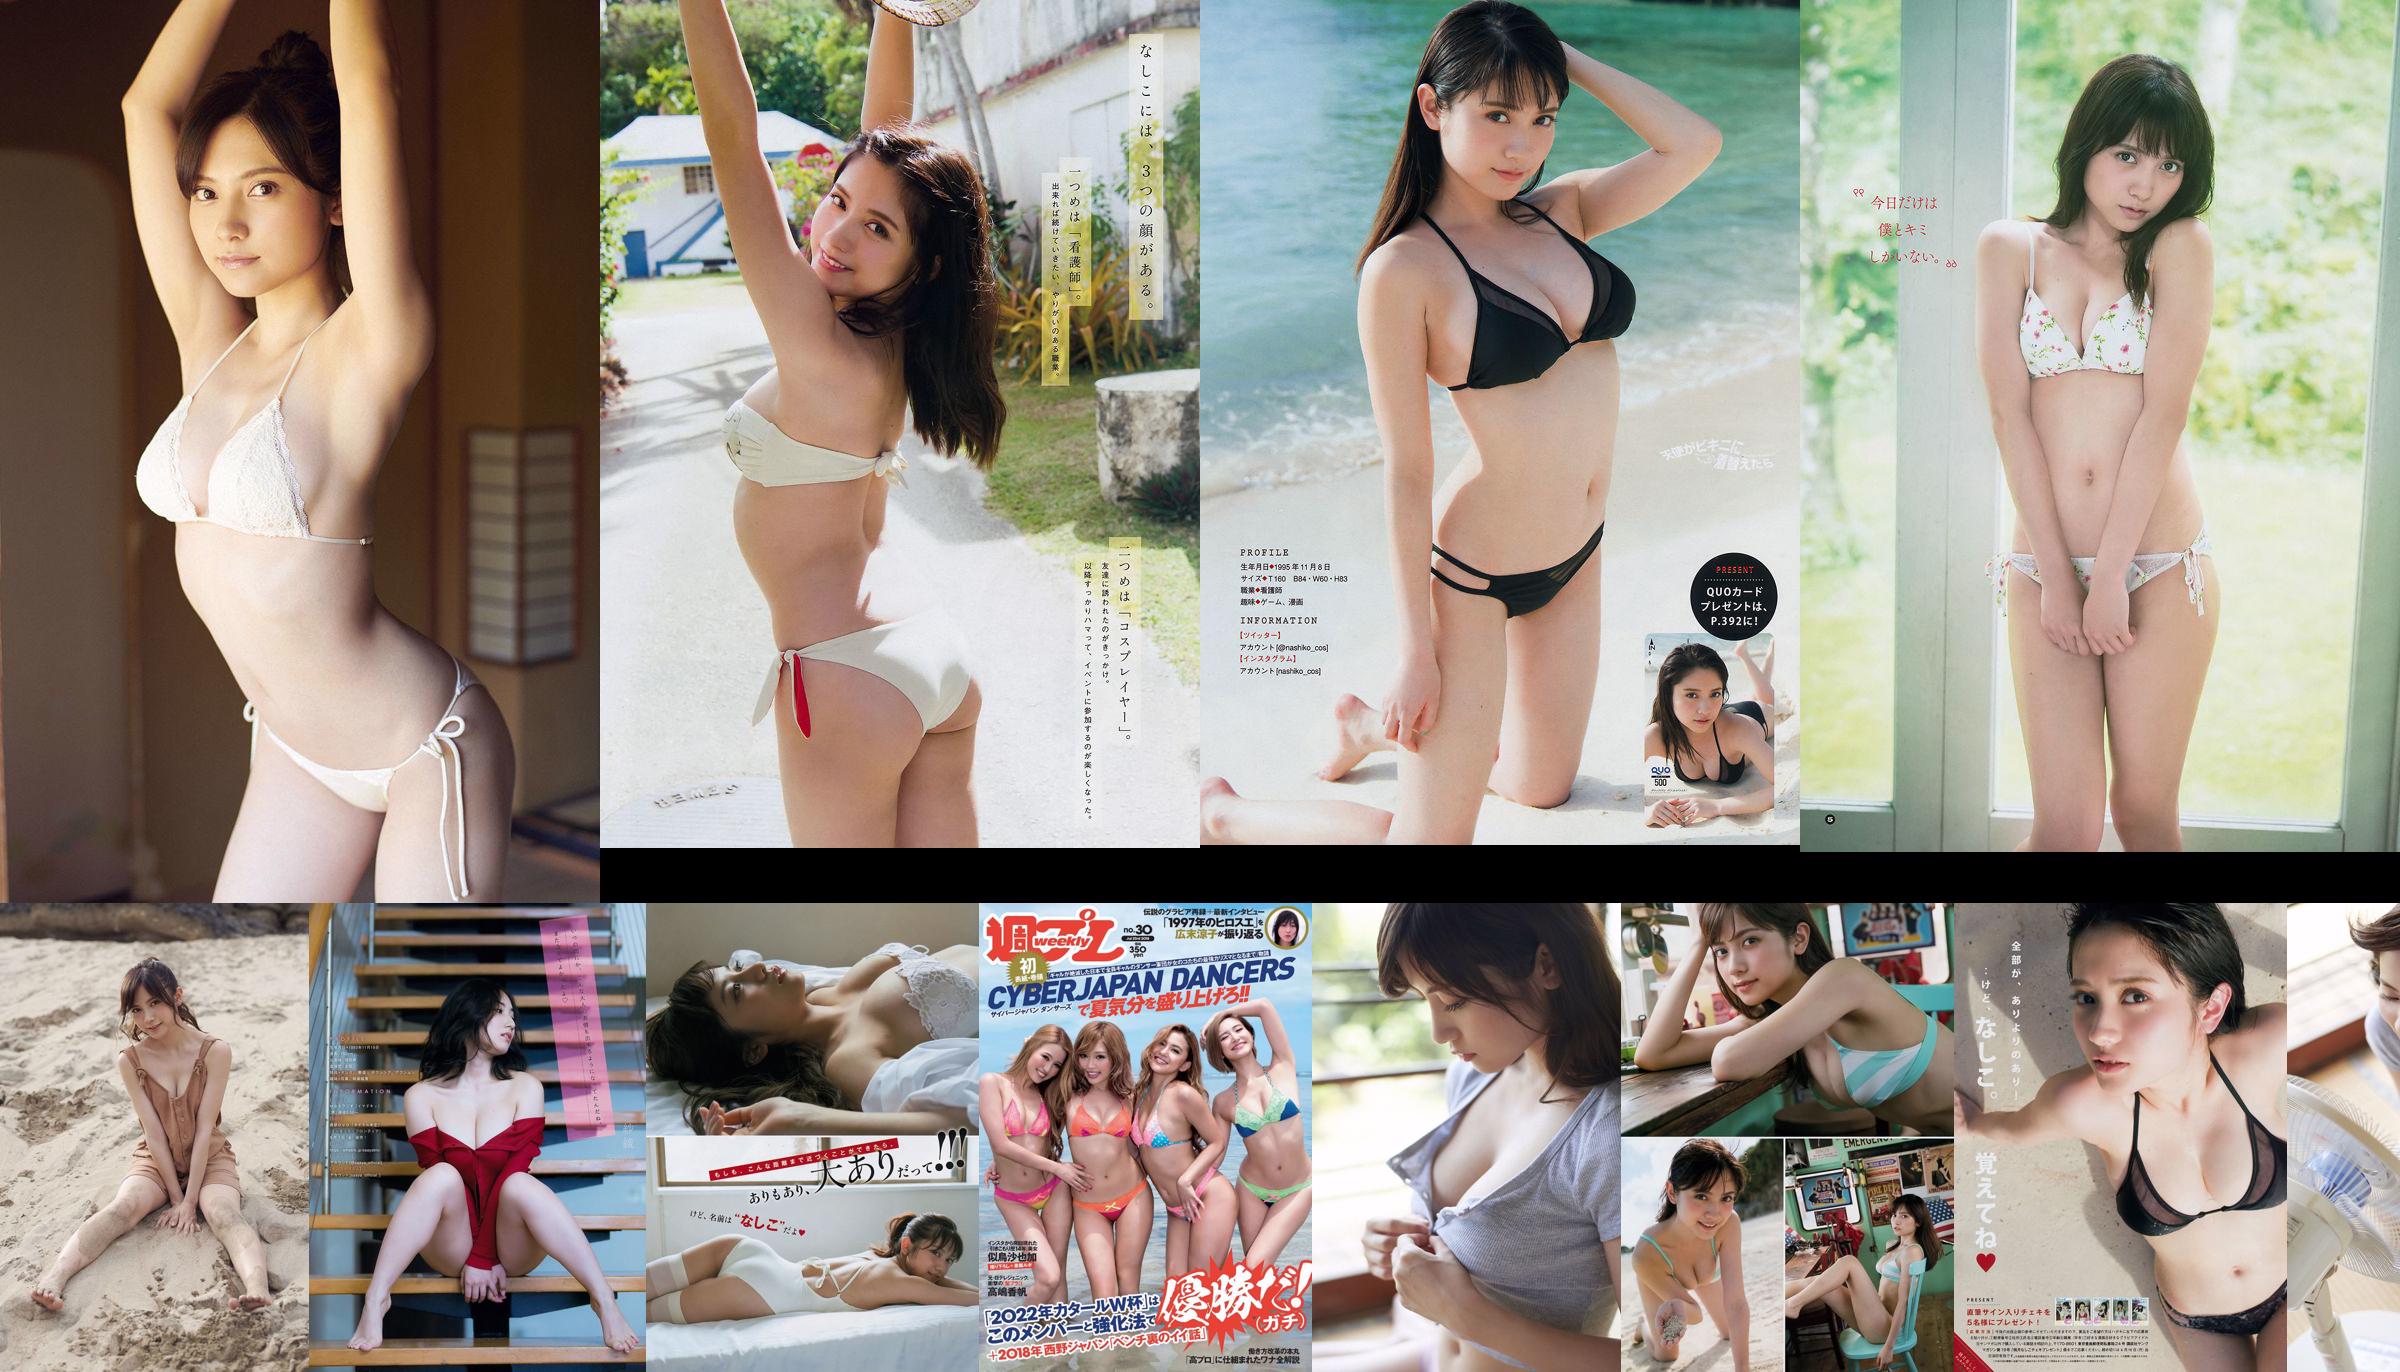 [Young Magazine] Nashiko Momotsuki 2018 No.19 Foto No.0d4ebd Seite 5